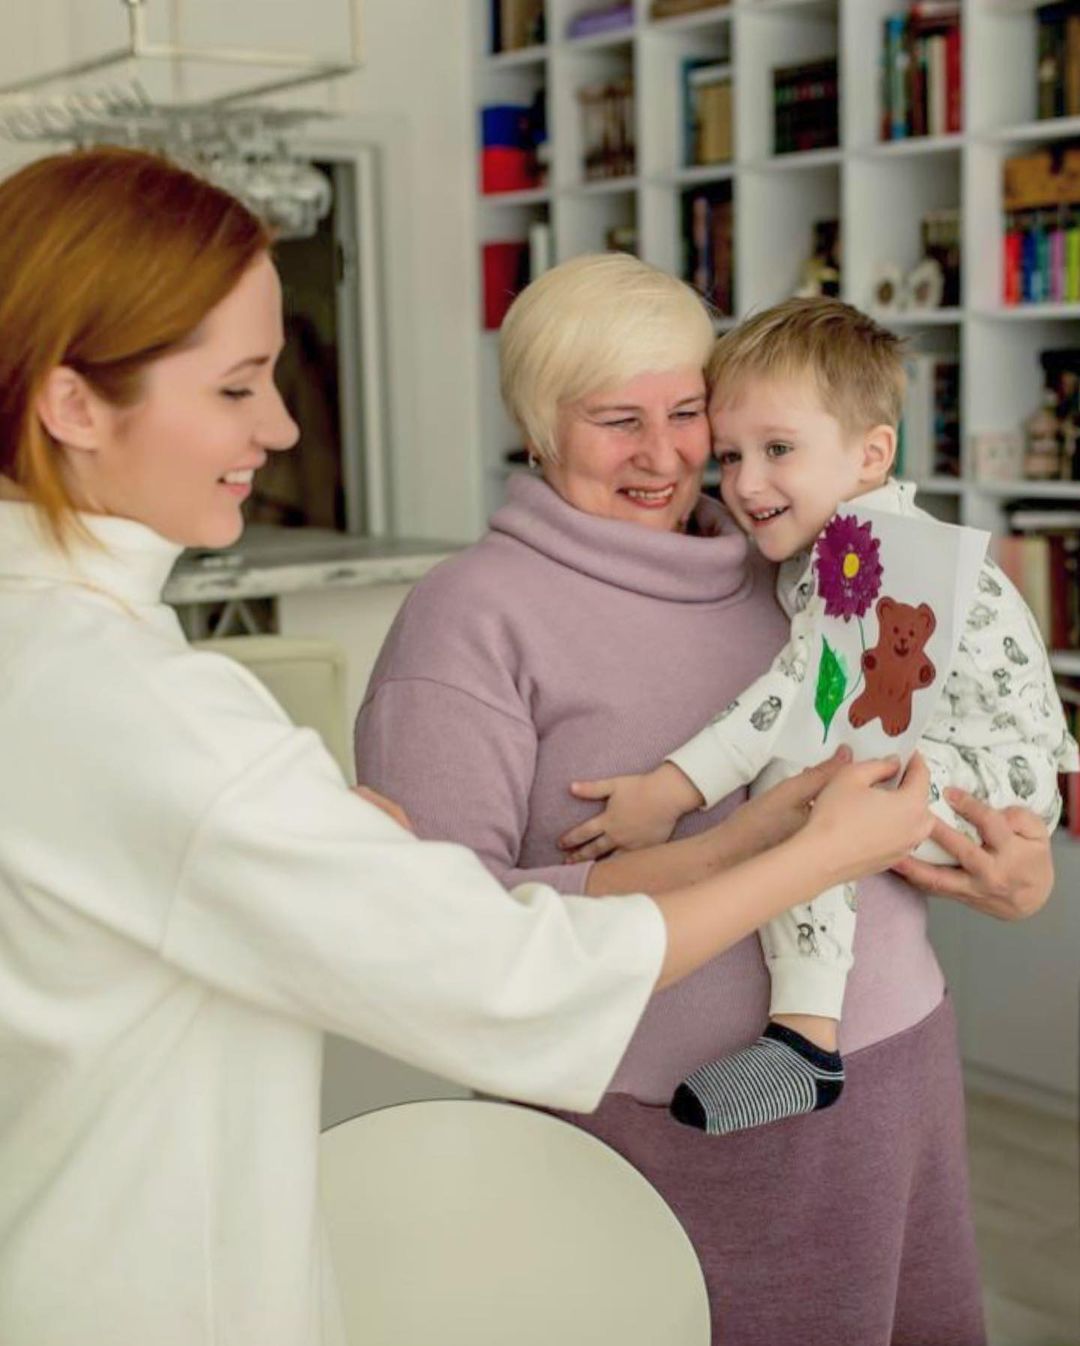 Наталка Денисенко с мамой Татьяной и сыном Андреем. Фото: Instagram.com/natalka_denisenko/